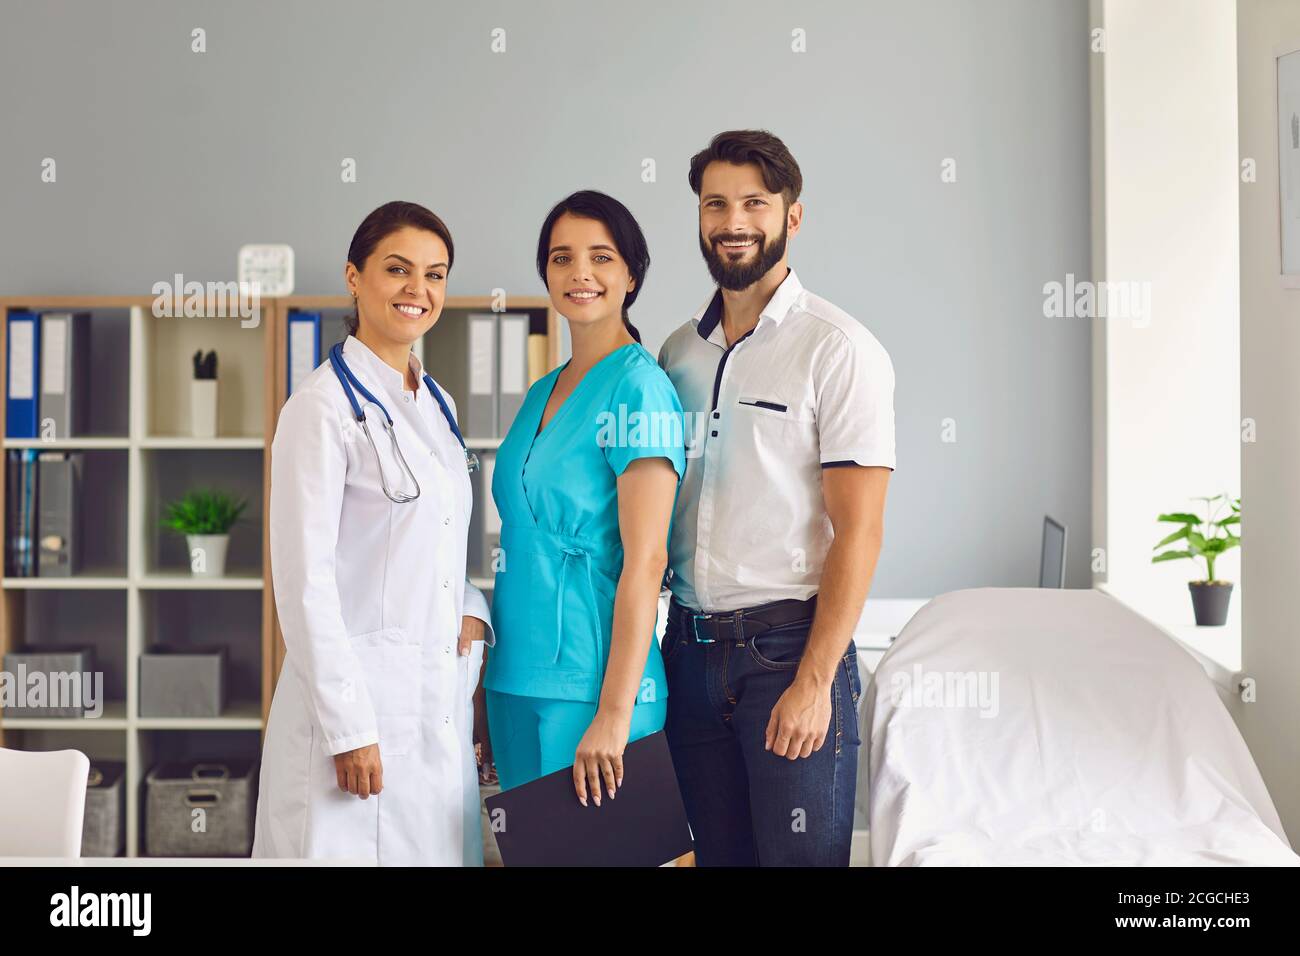 Portrait de groupe de trois jeunes professionnels de la santé souriants dans moderne bureau de la clinique Banque D'Images